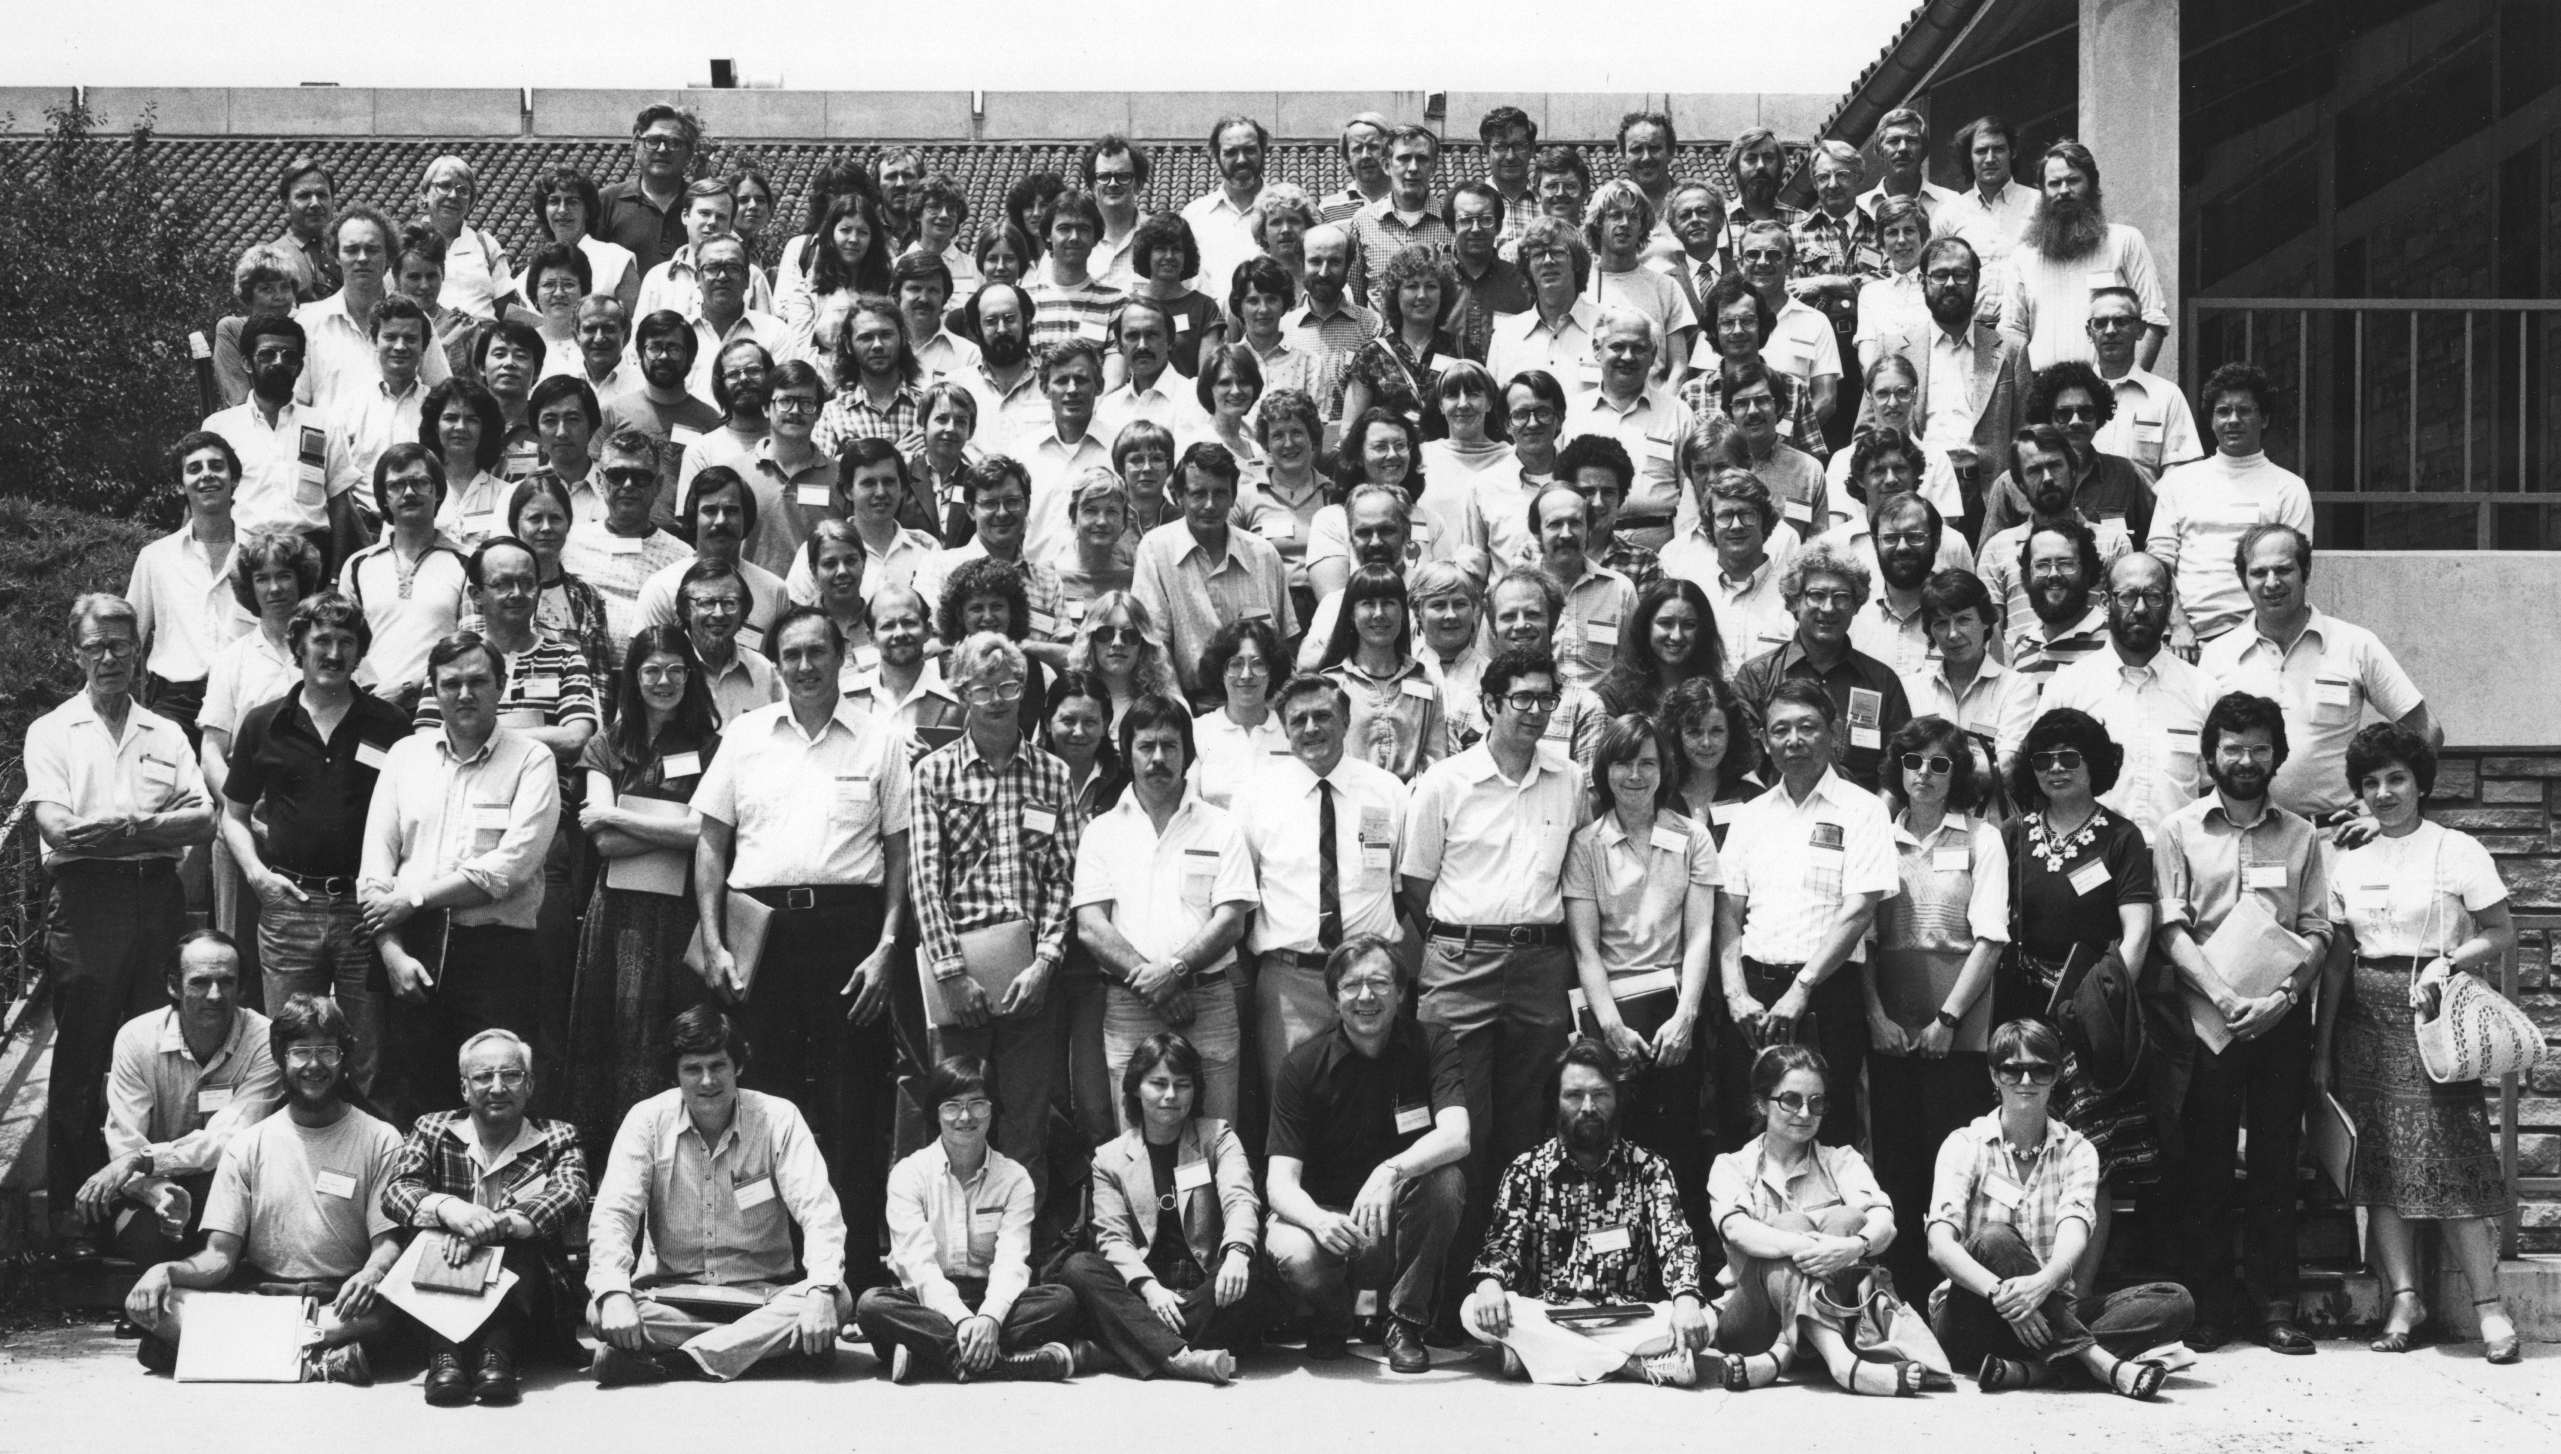 1981 SYMPOSIUM PARTICIPANTS